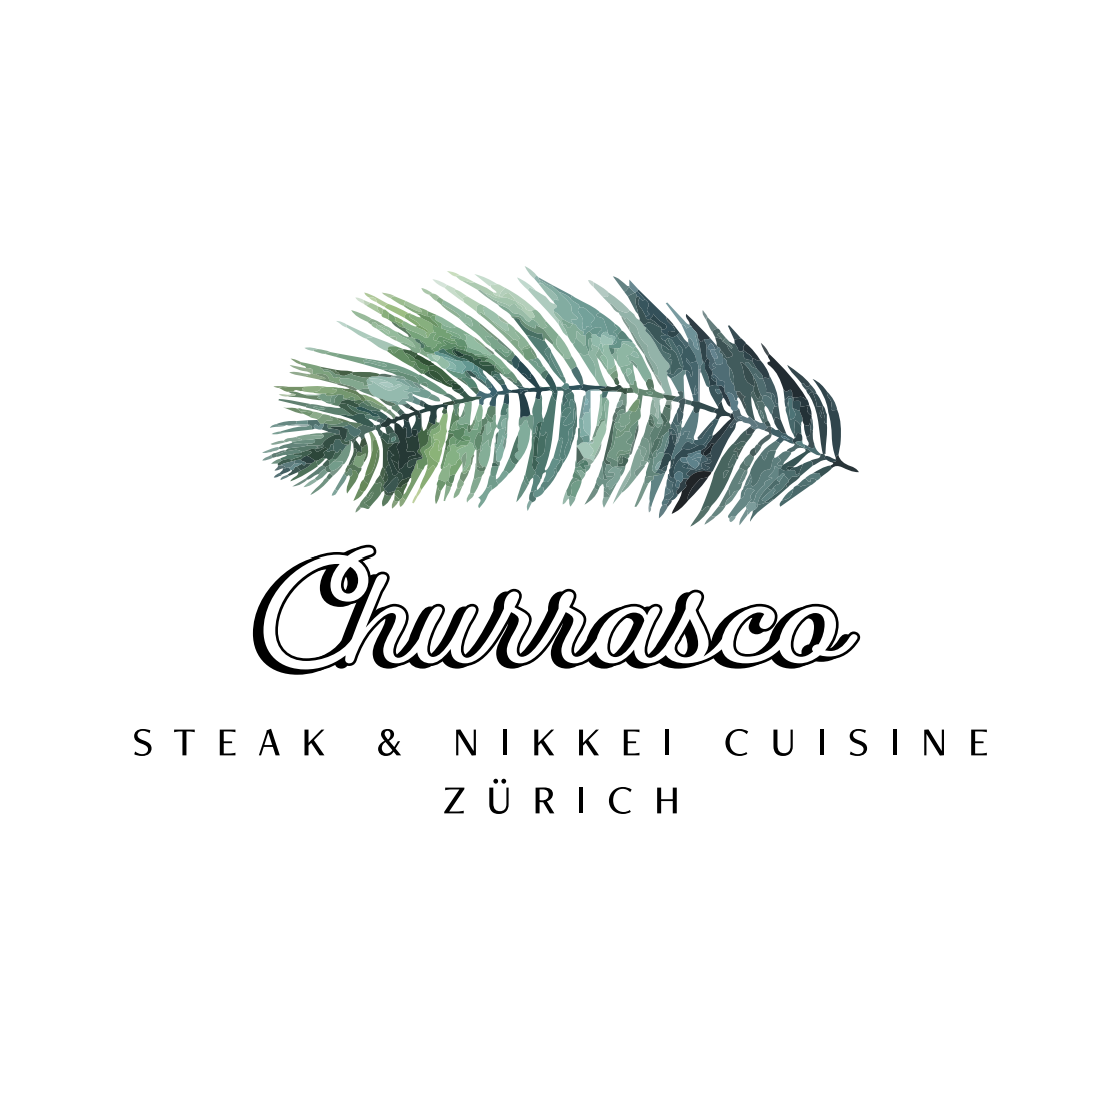 Churrasco Steak & Nikkei Cuisine Logo